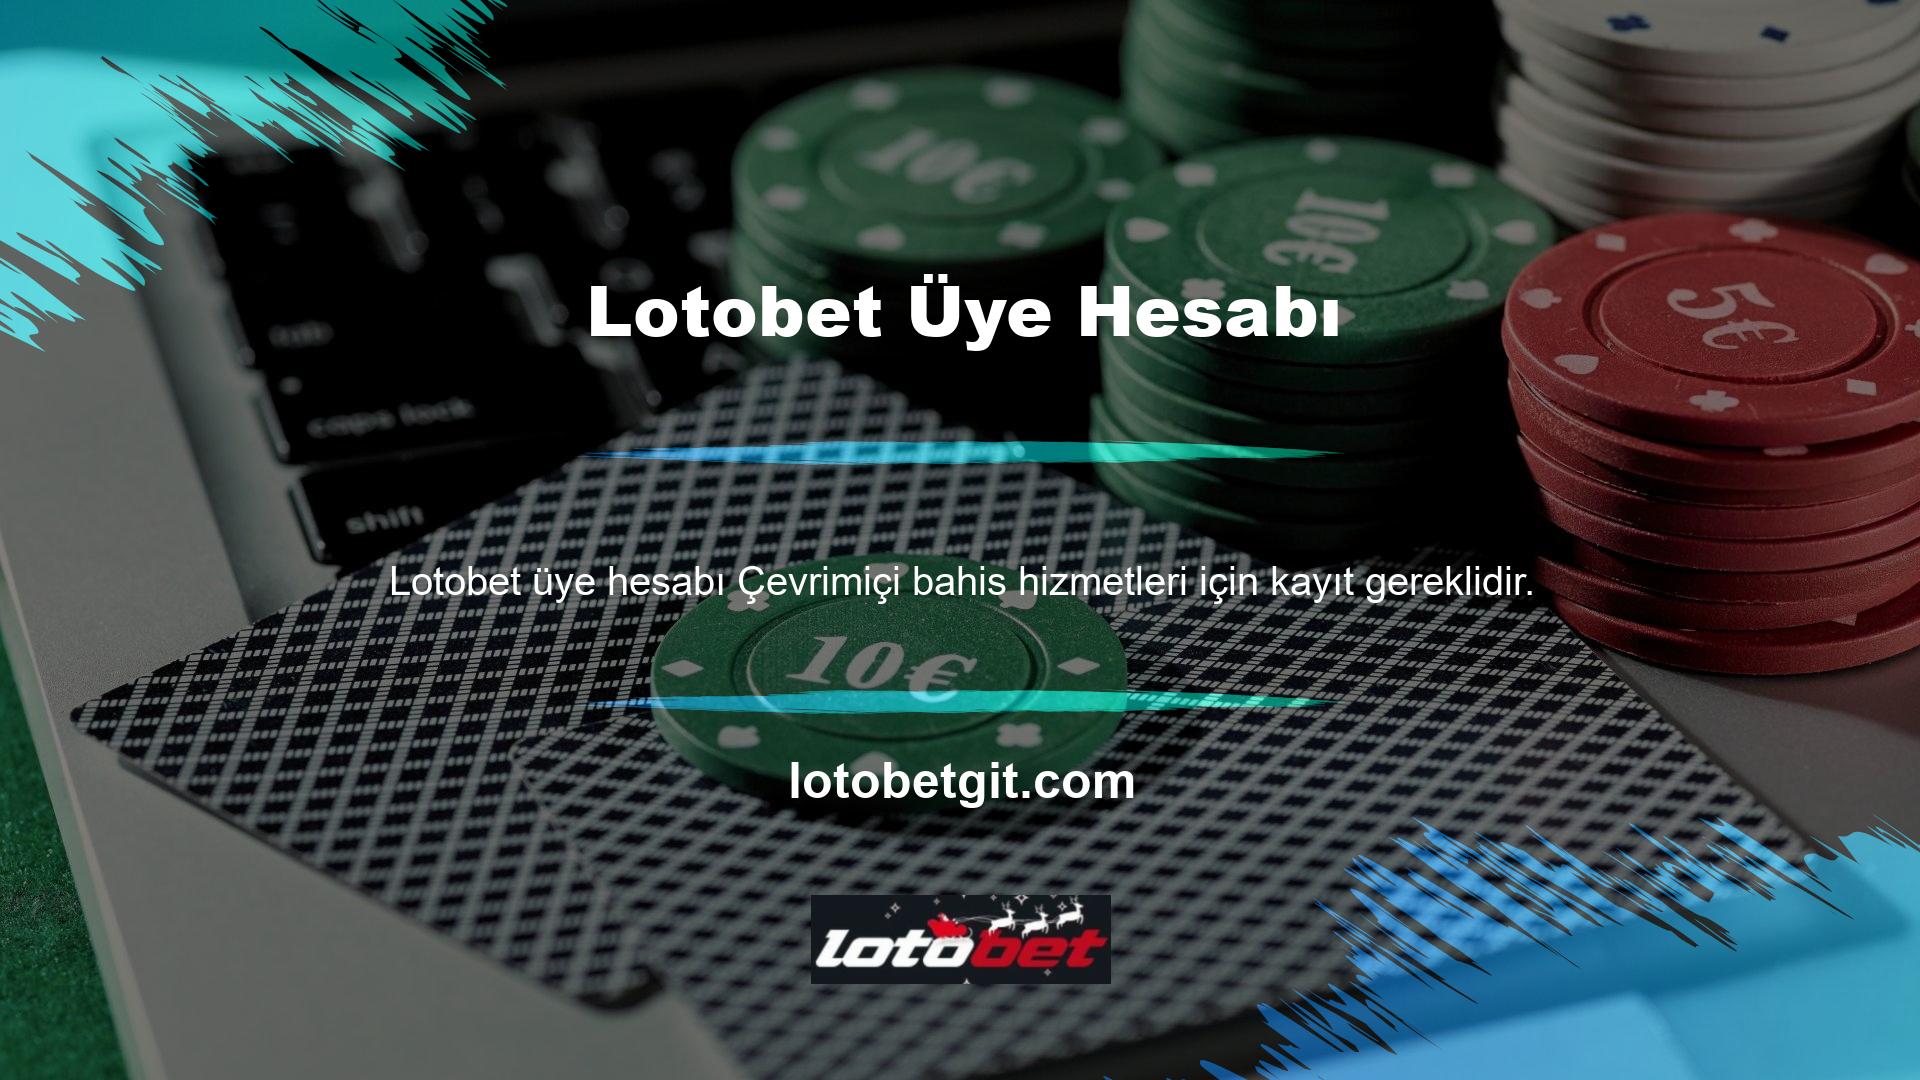 Lotobet web sitesini ziyaret ederek üye olmayı seçenler, istedikleri üye hesabını oluşturmak için çevrimiçi üyelik formunu doldurabilirler